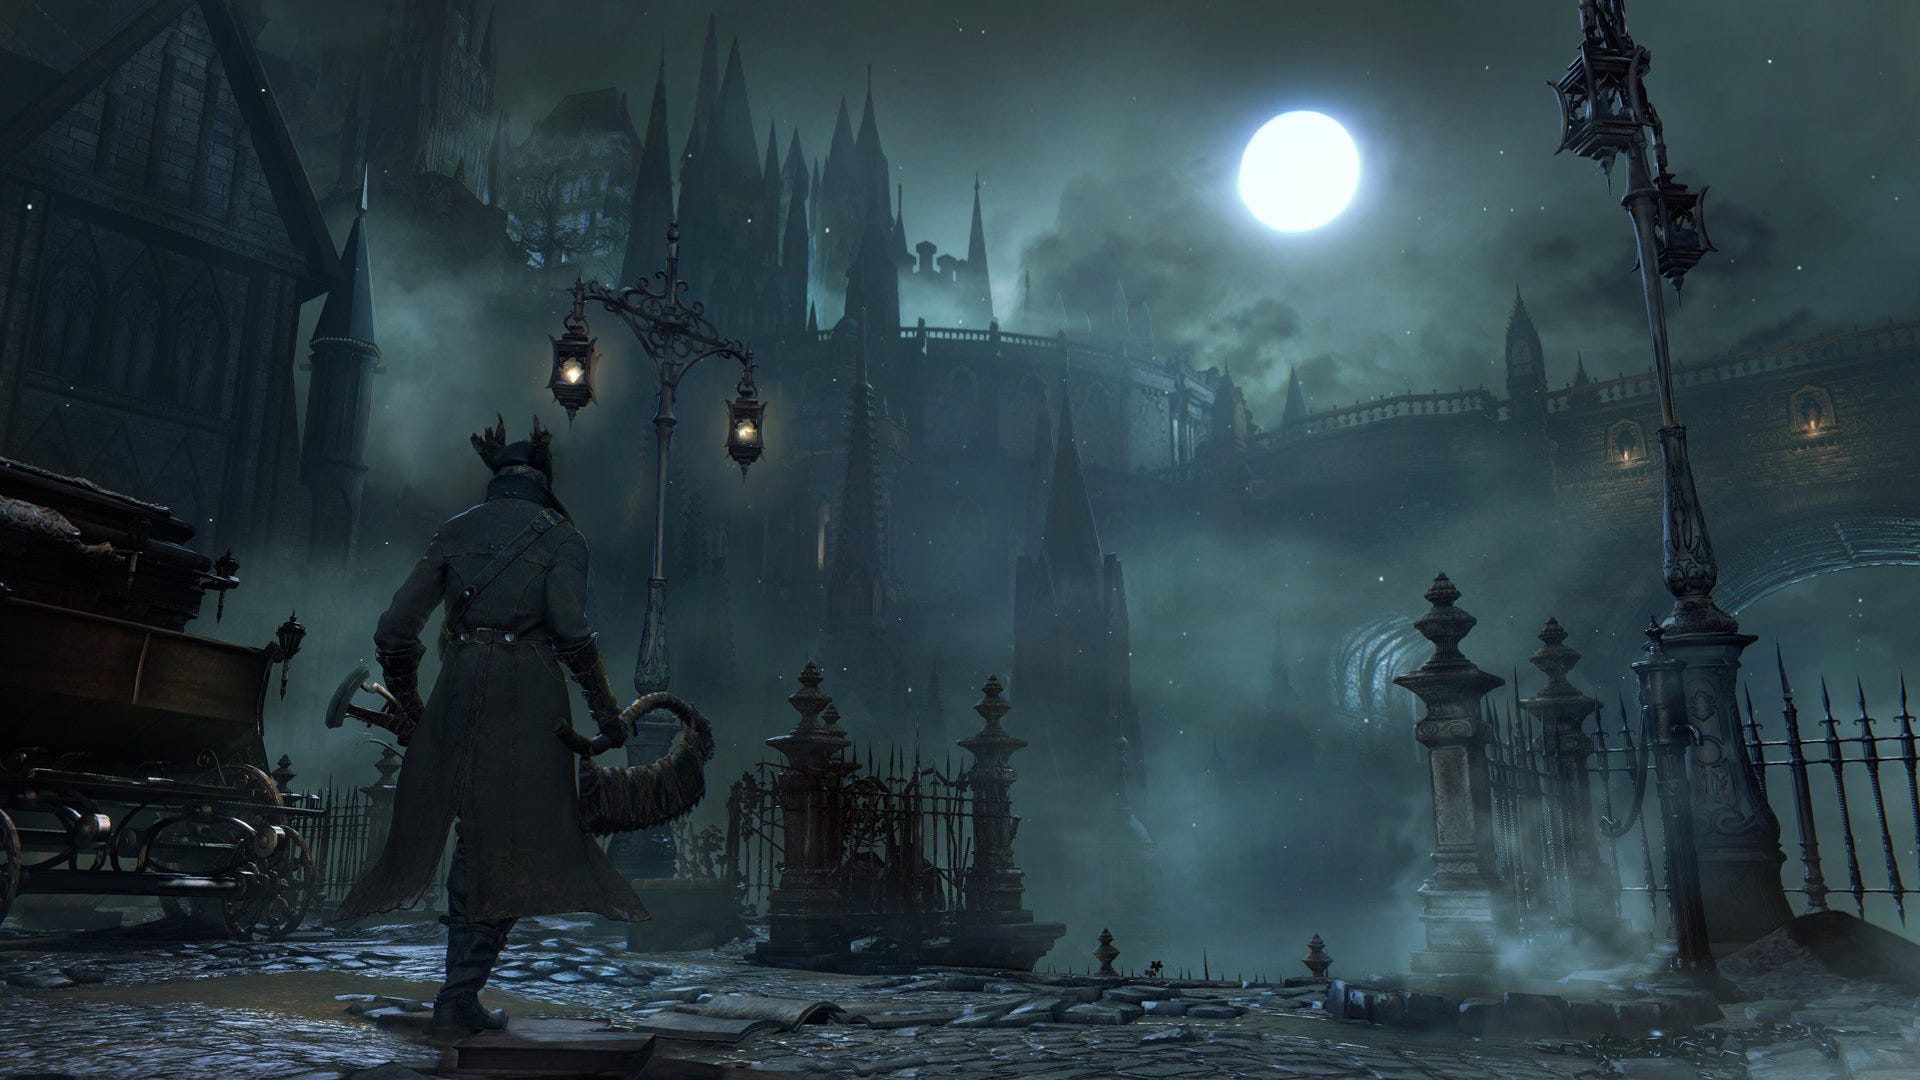 Bloodborne pode ser considerado um jogo melhor comparado com Dark Souls 3?